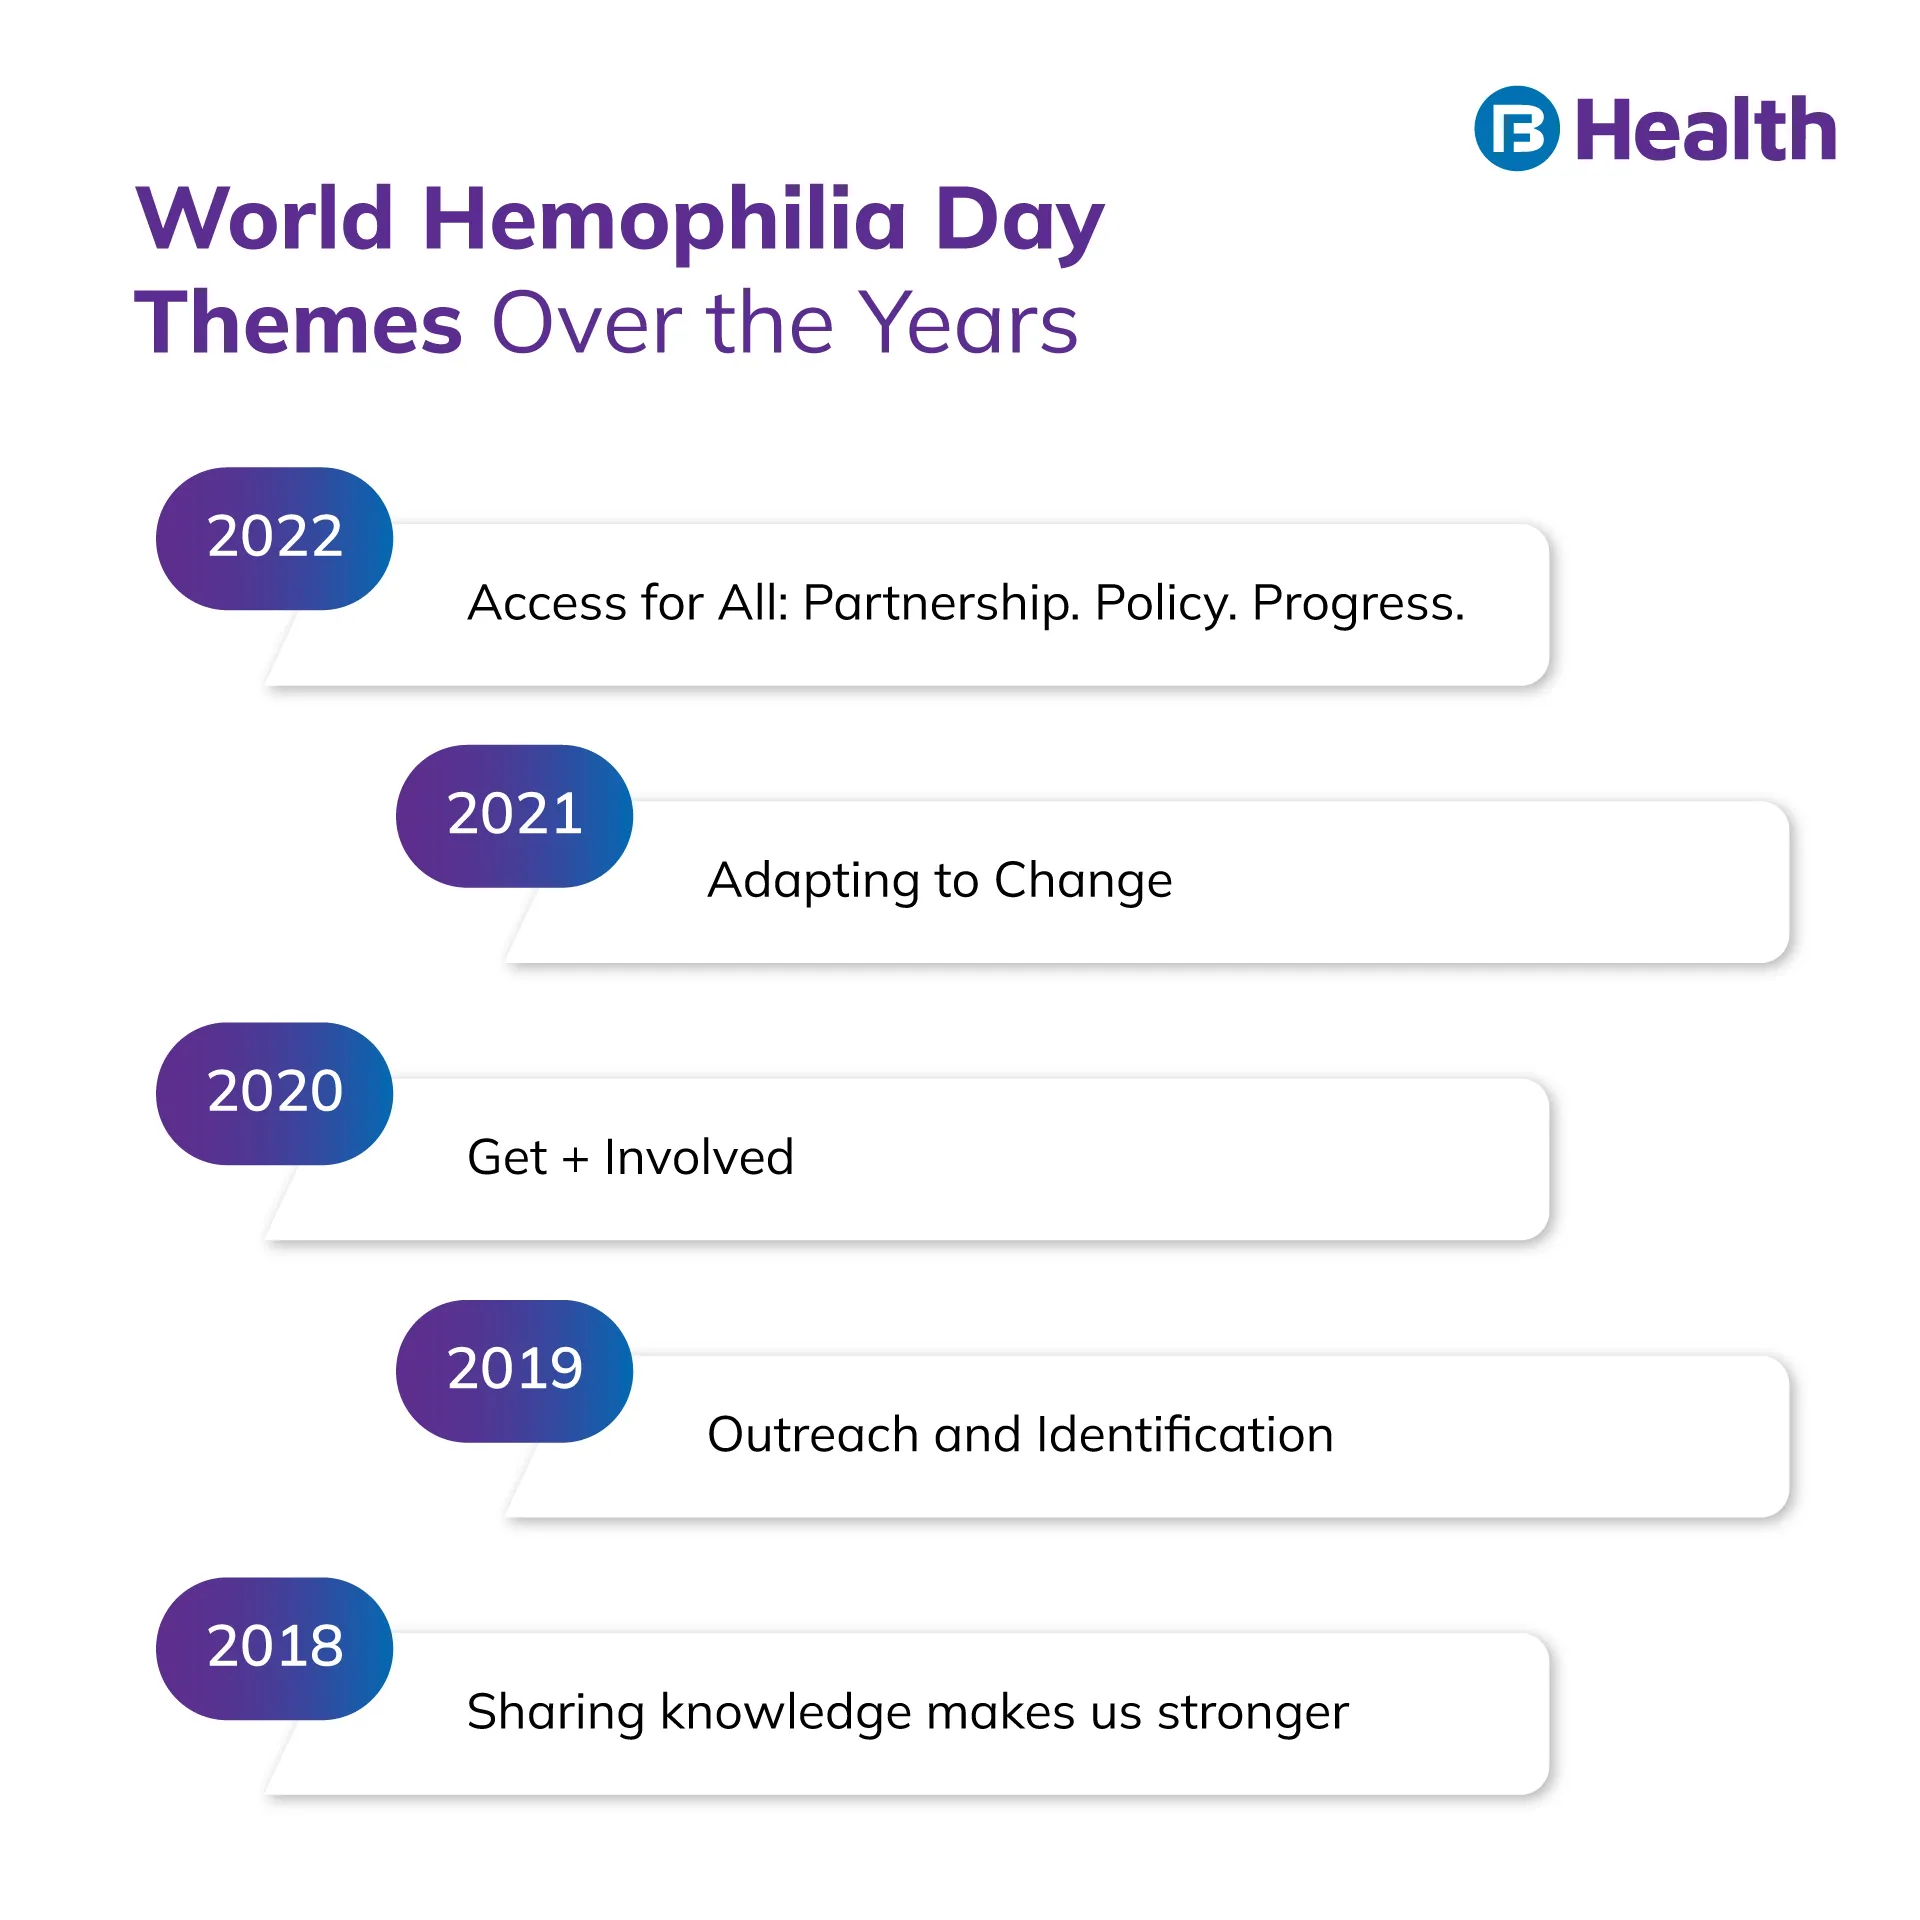 World Hemophilia Day themes